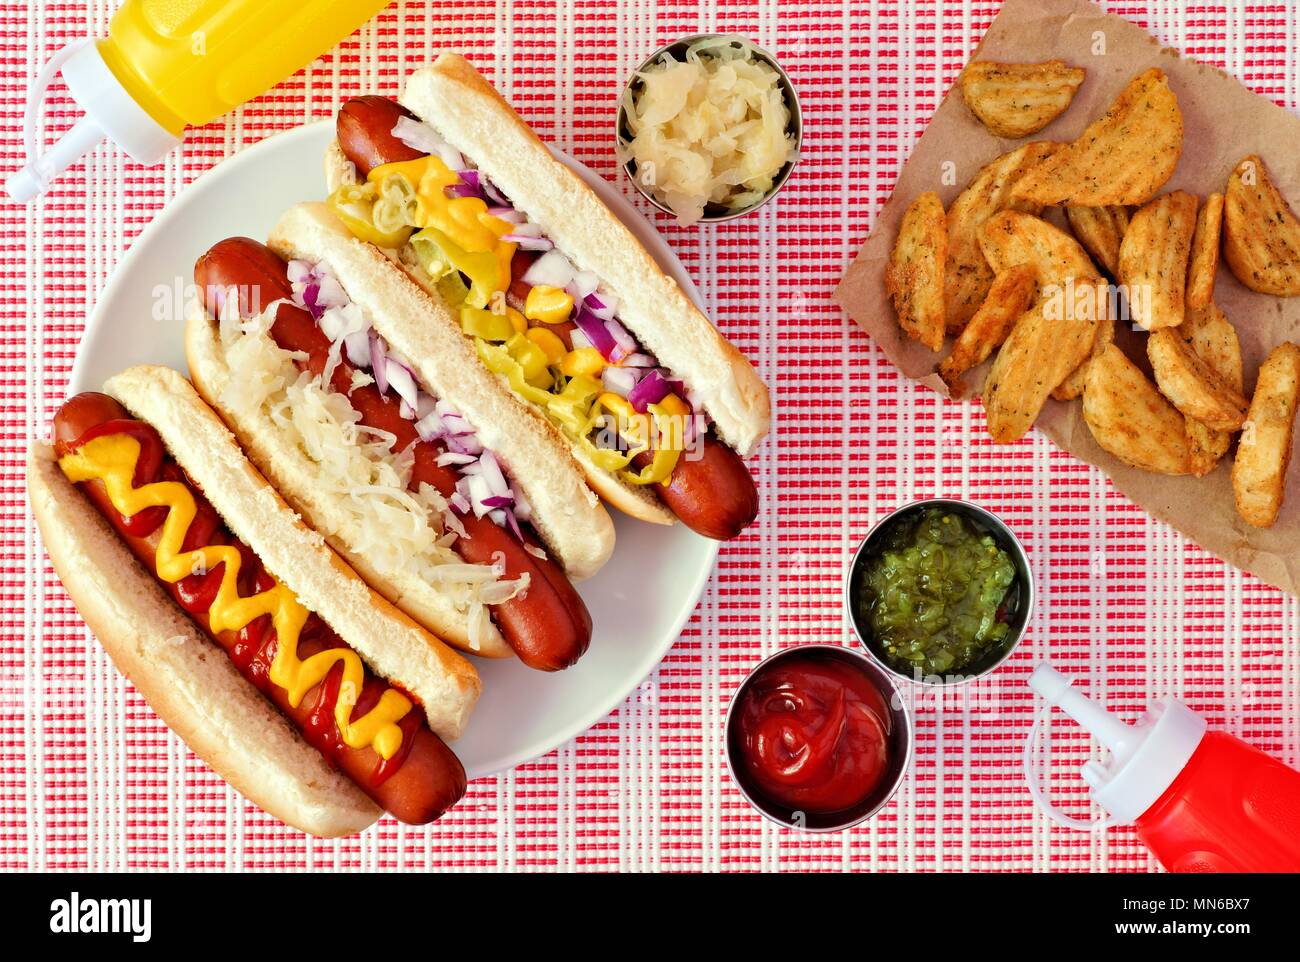 Hot dogs mit verschiedenen Toppings und Kartoffelecken, oben Szene auf einem roten und einem weißen Tuch Stockfoto